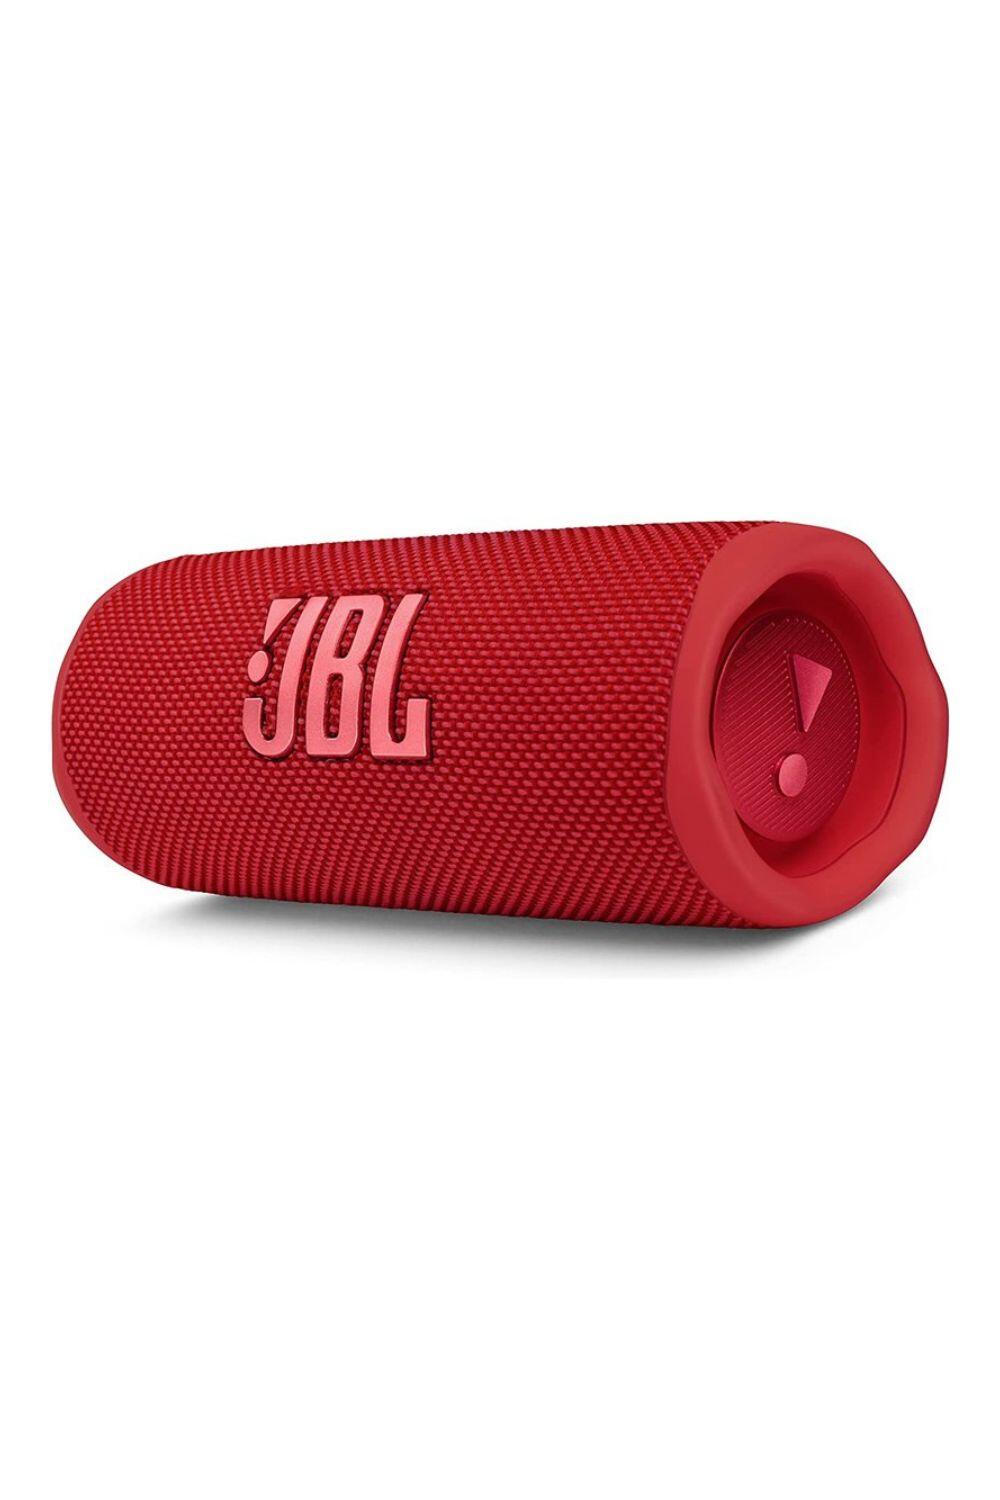 JBL Flip 6 Portable Waterproof and Dustproof Bluetooth Speaker 1/4